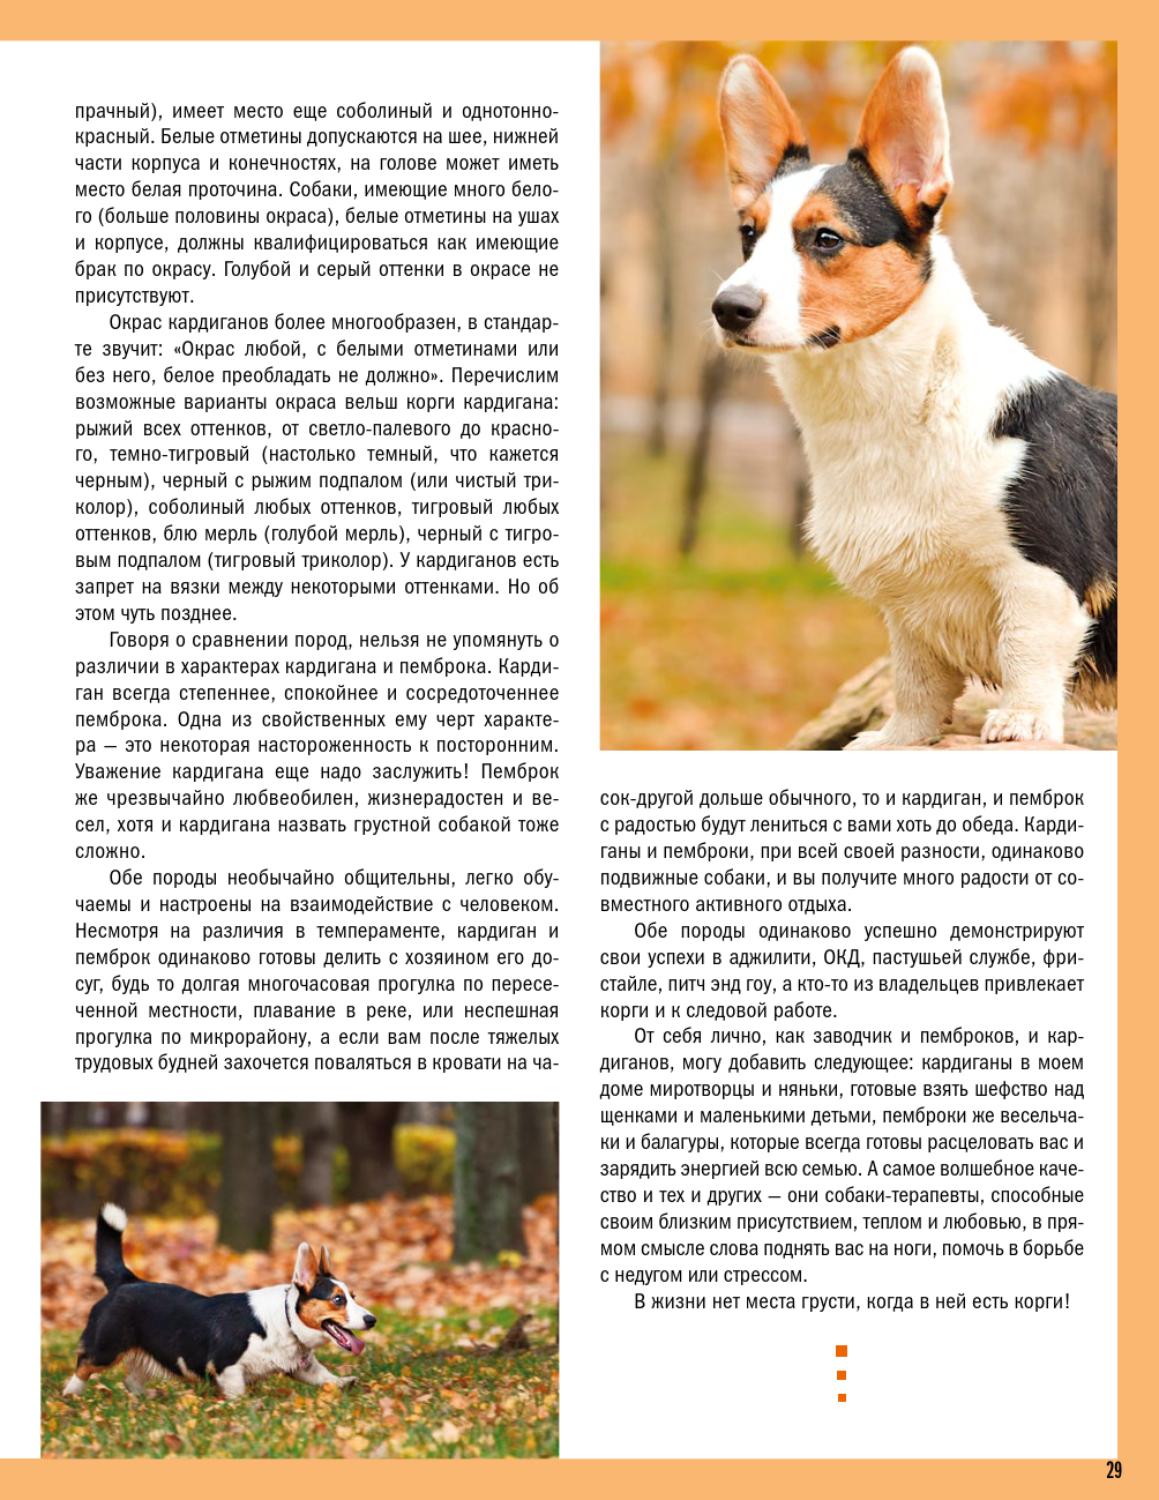 Вельш-корги-кардиган: характер собак и описание породы по стандарту с фото щенков и отзывами владельцев